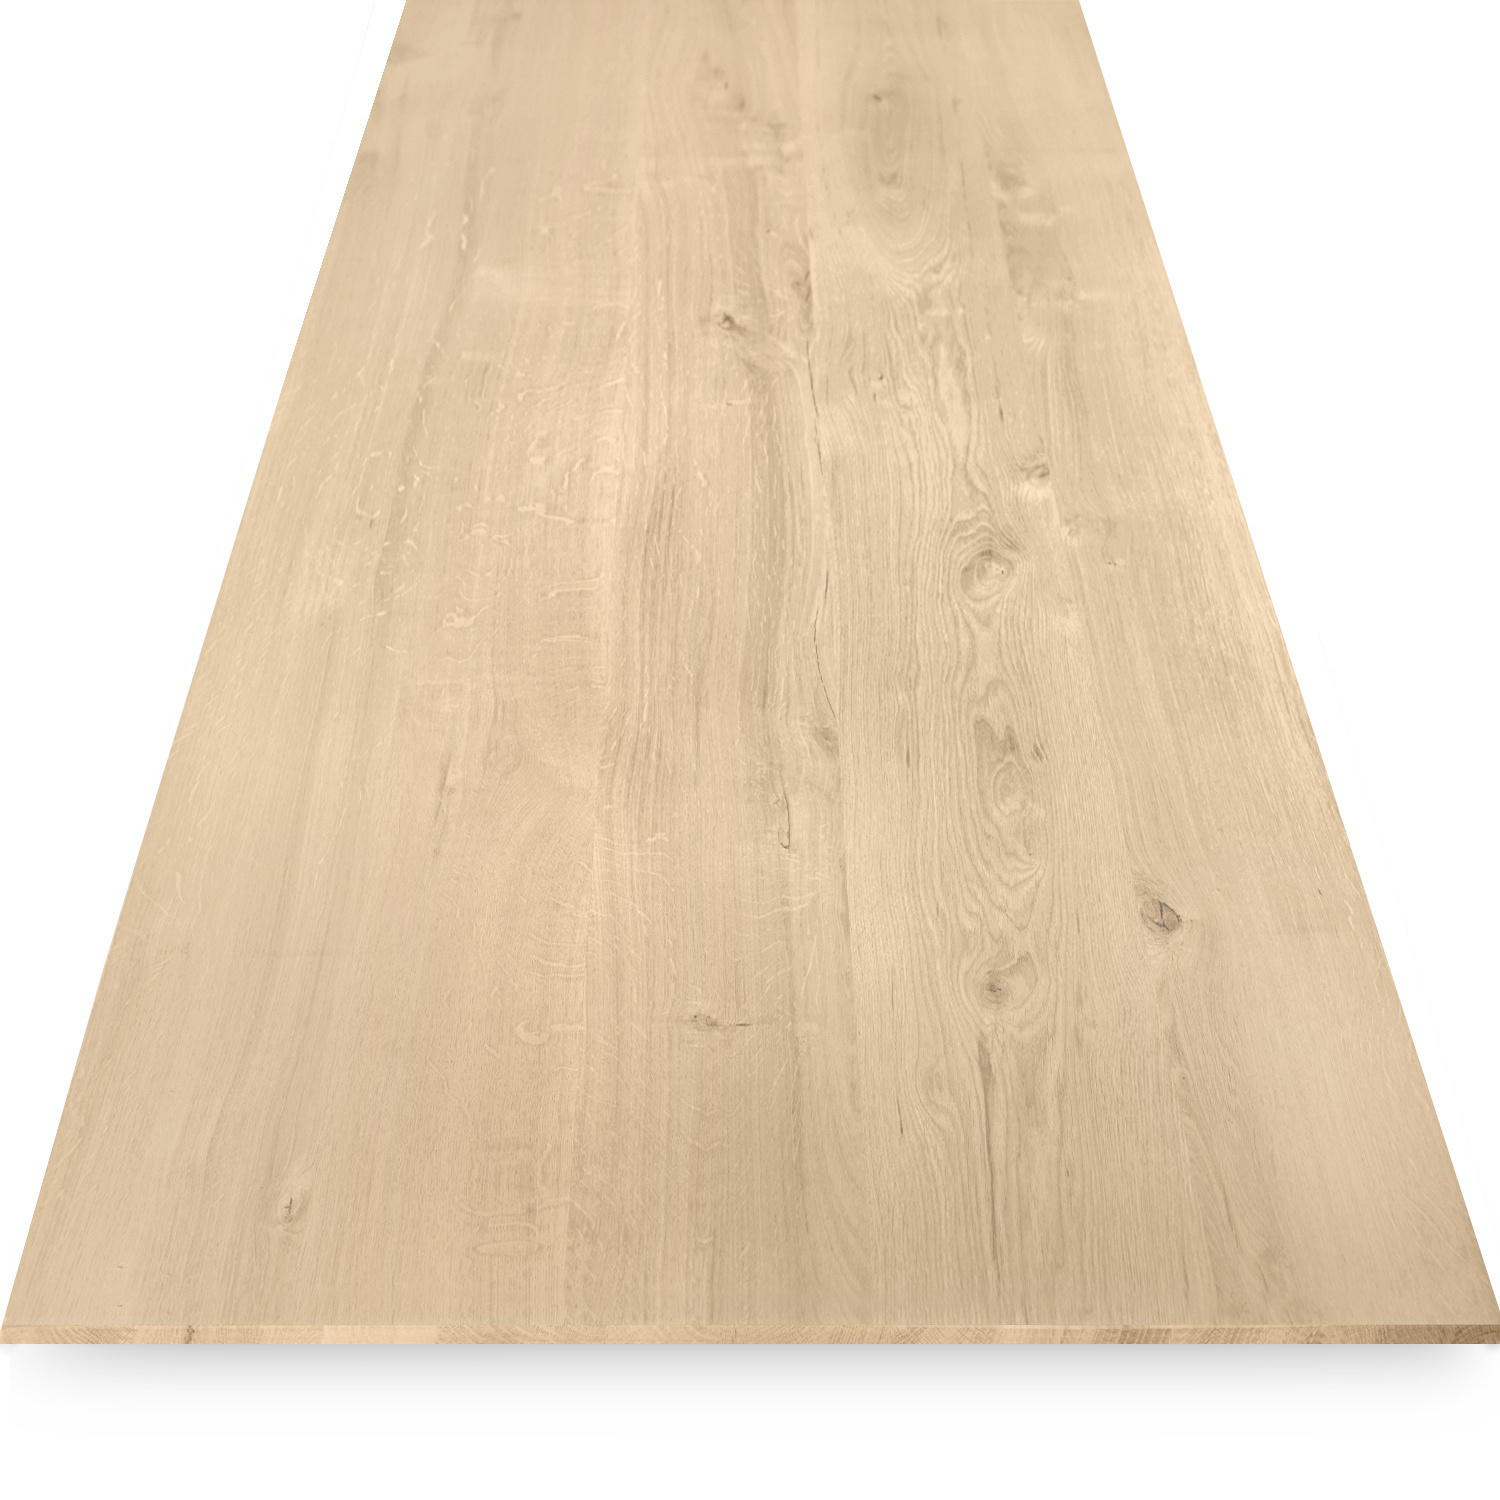  Eiken tafelblad met verjongde rand - 2,7 cm dik (1-laag) - Diverse afmetingen - rustiek Europees eikenhout - met brede lamellen (circa 10-12 cm) - verlijmd kd 8-12%